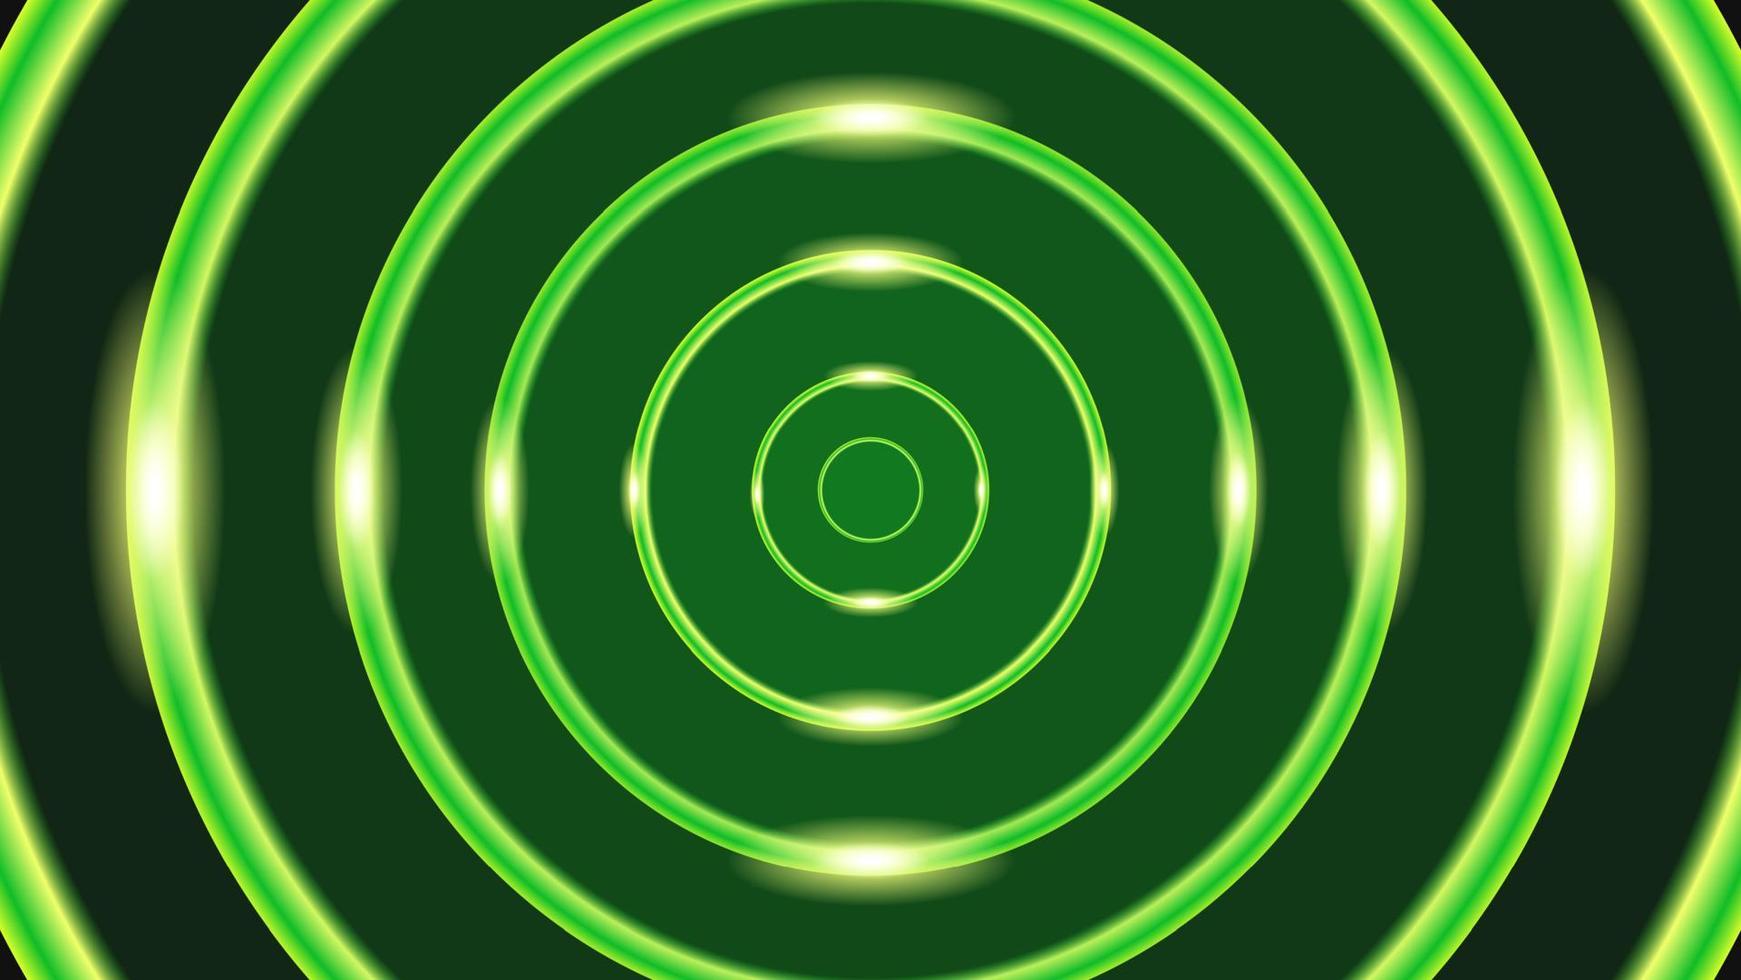 banner de fondo verde con un círculo verde brillante de estilo lujoso, adecuado para folletos, volantes, pancartas, promociones, anuncios y otros vector